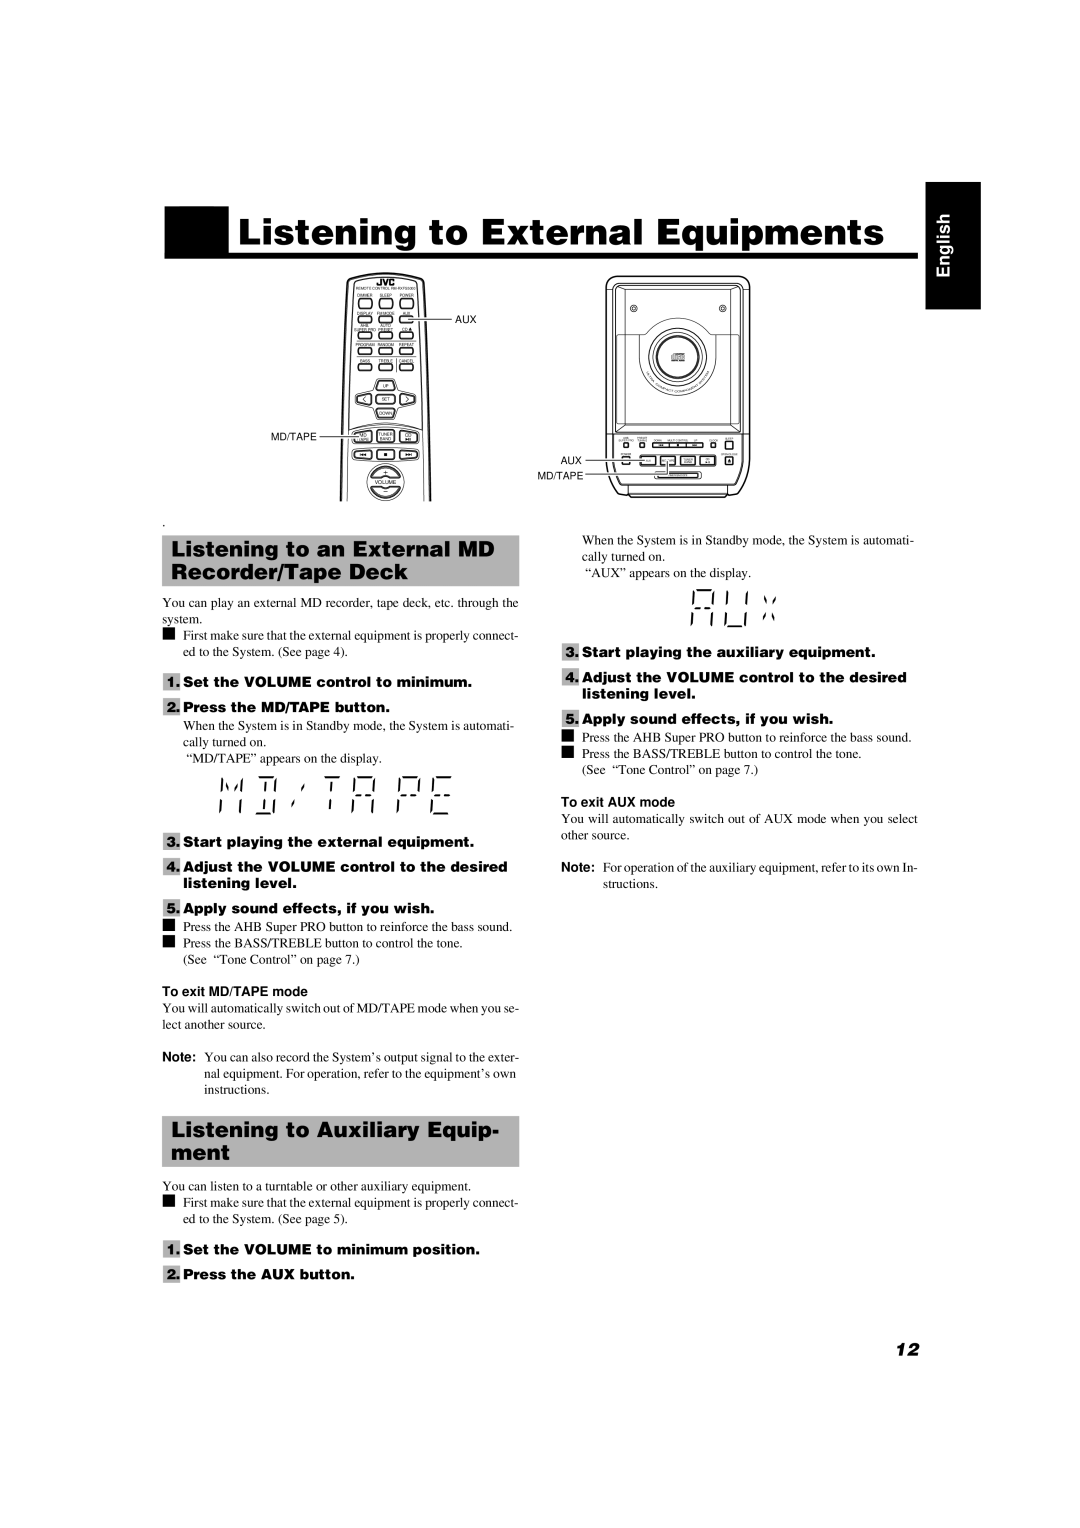 JVC FS-5000, FS-6000 manual Listening to External Equipments, Listening to an External MD Recorder/Tape Deck 